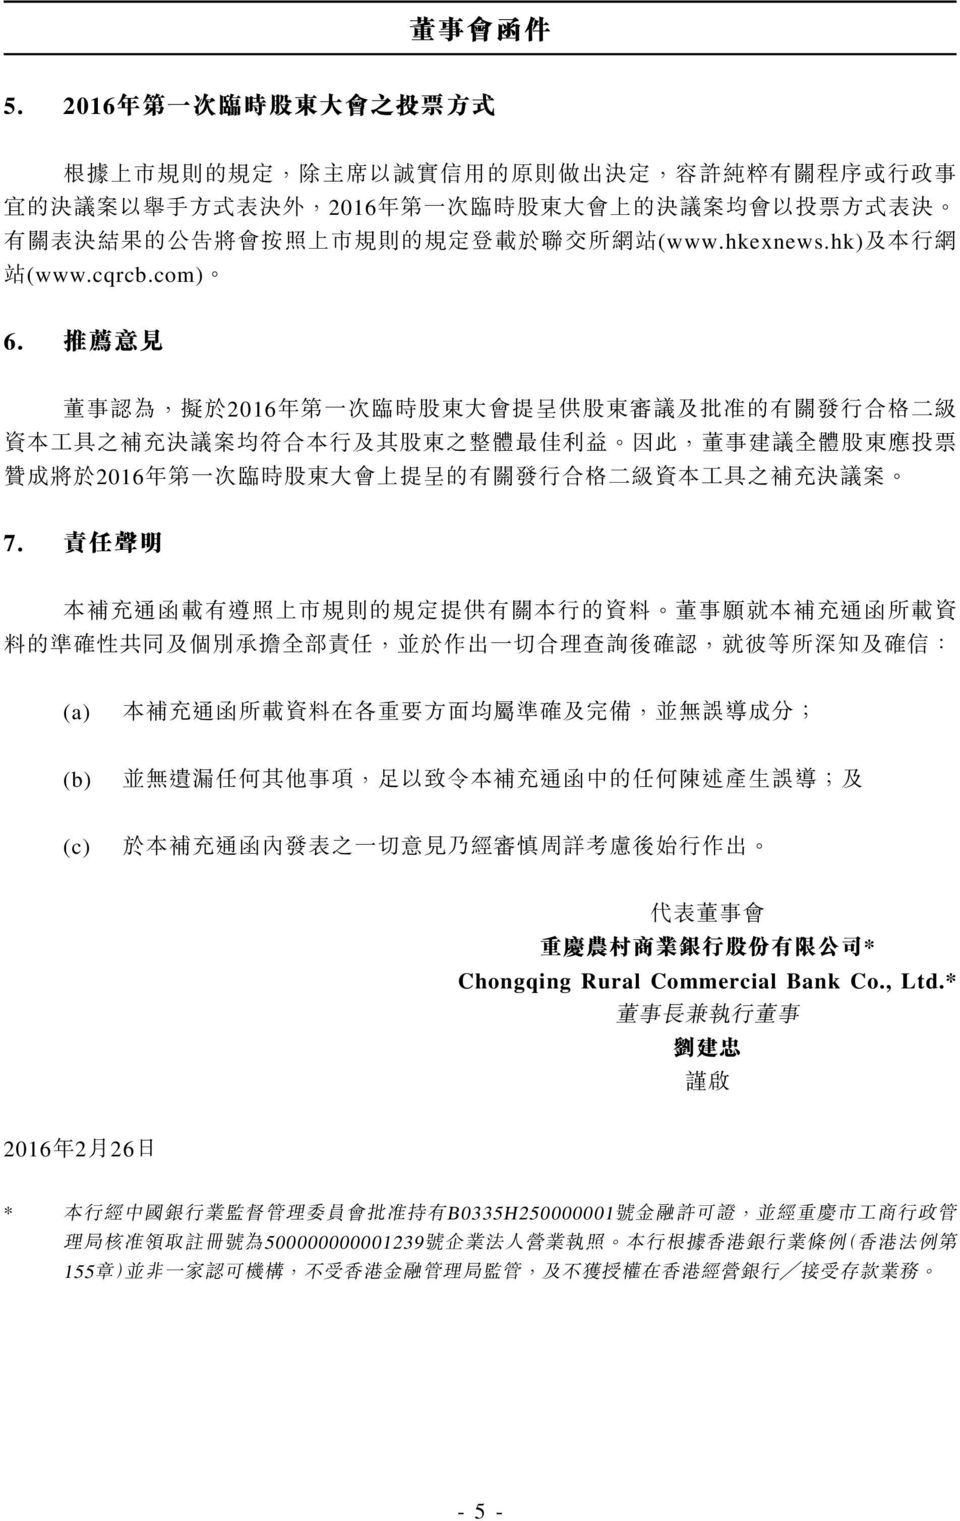 的 公 告 將 會 按 照 上 市 規 則 的 規 定 登 載 於 聯 交 所 網 站 (www.hkexnews.hk) 及 本 行 網 站 (www.cqrcb.com) 6.